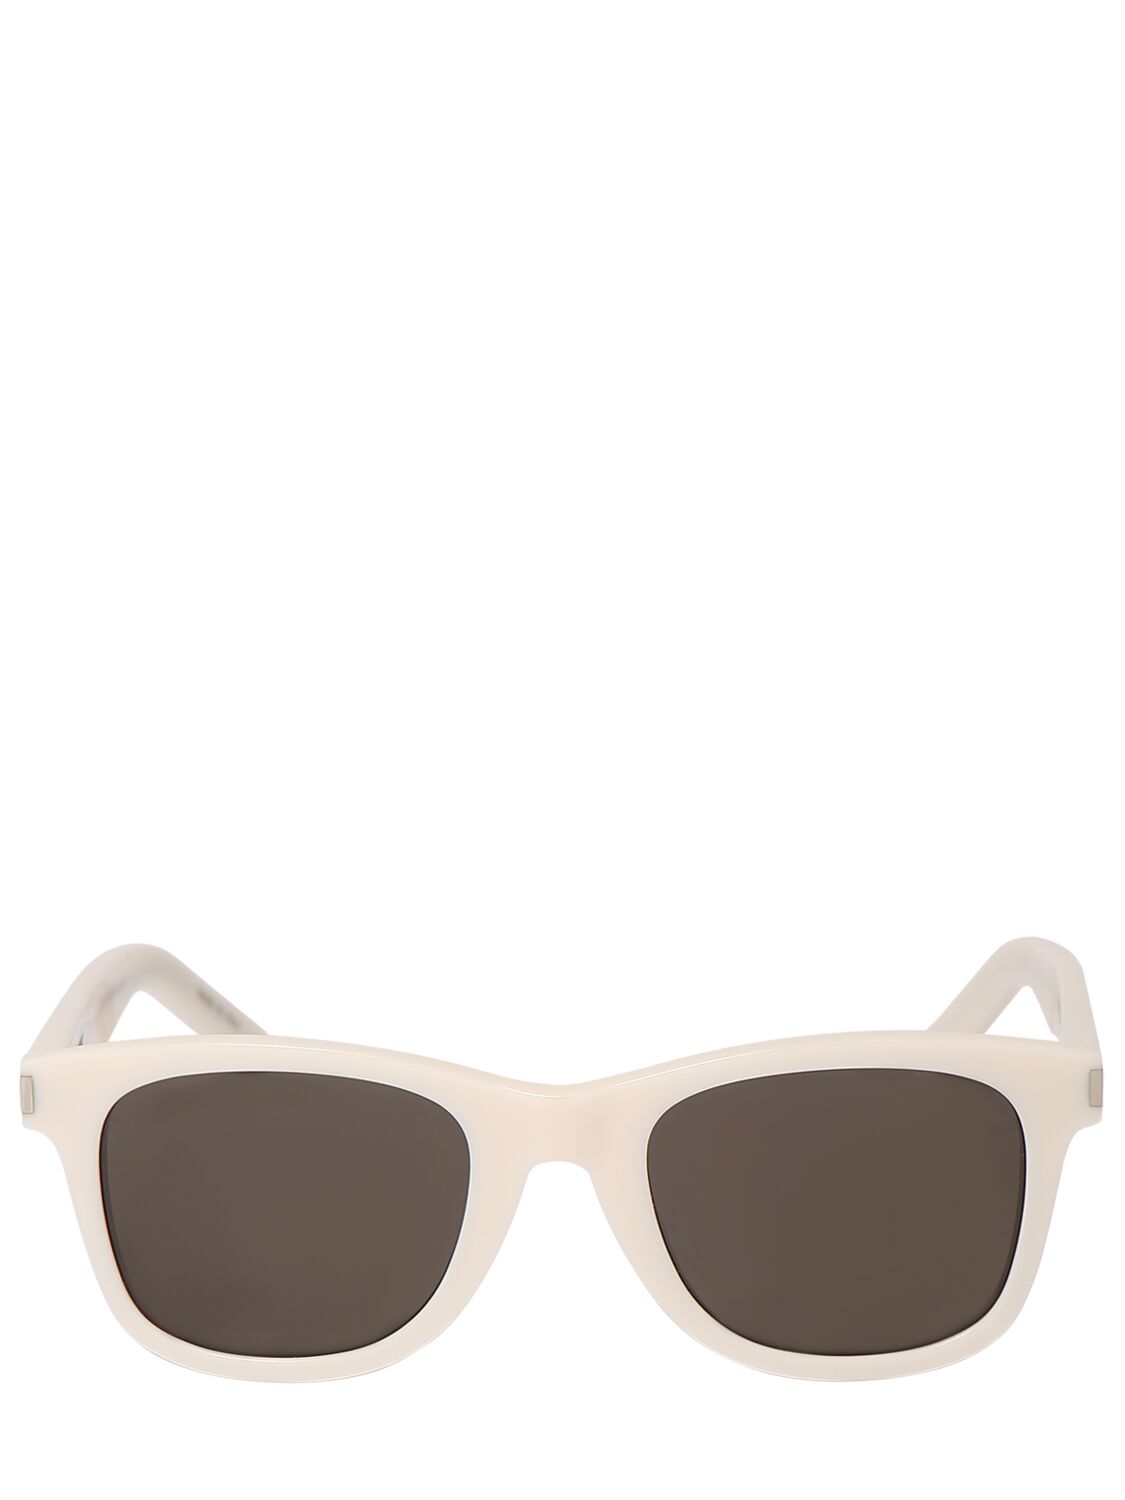 Saint Laurent Sl 51 Acetate Sunglasses In Ivory